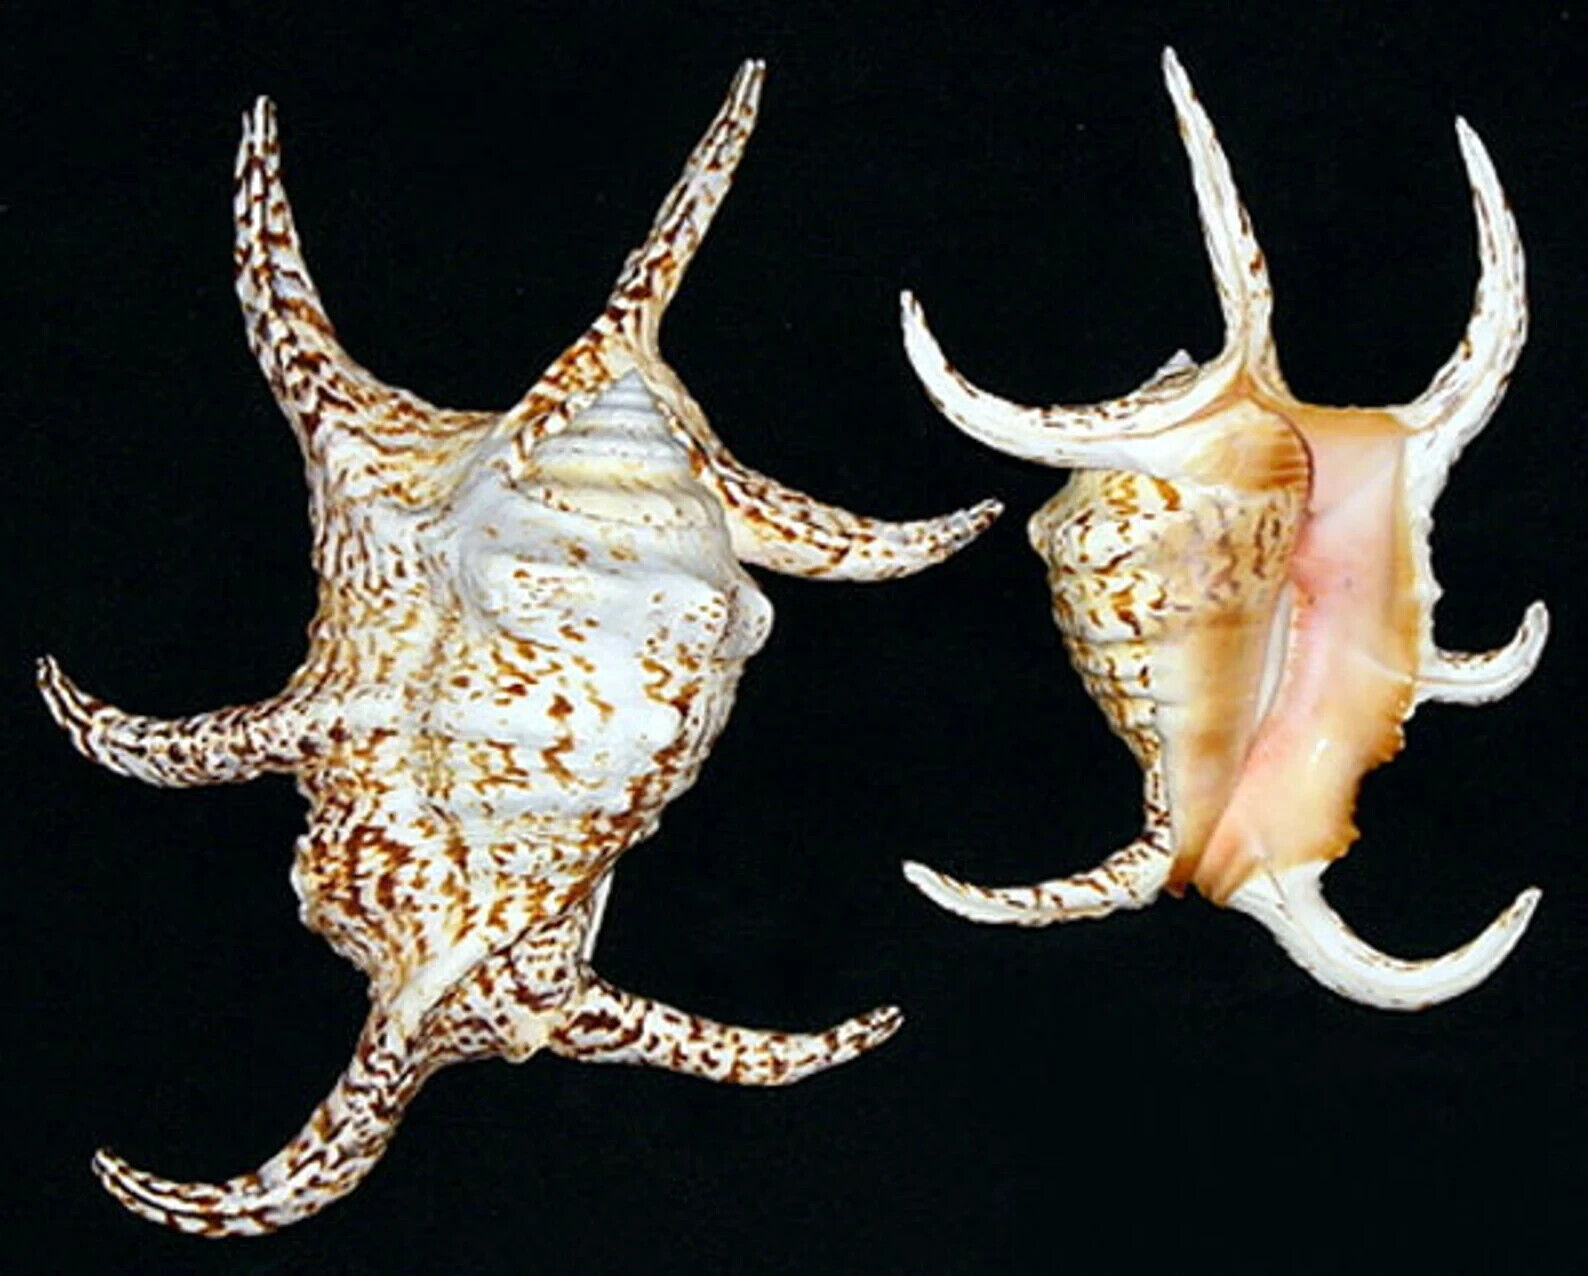 LAMBIS CHIRAGRA ~ Spider Conch Seashell ~ 4